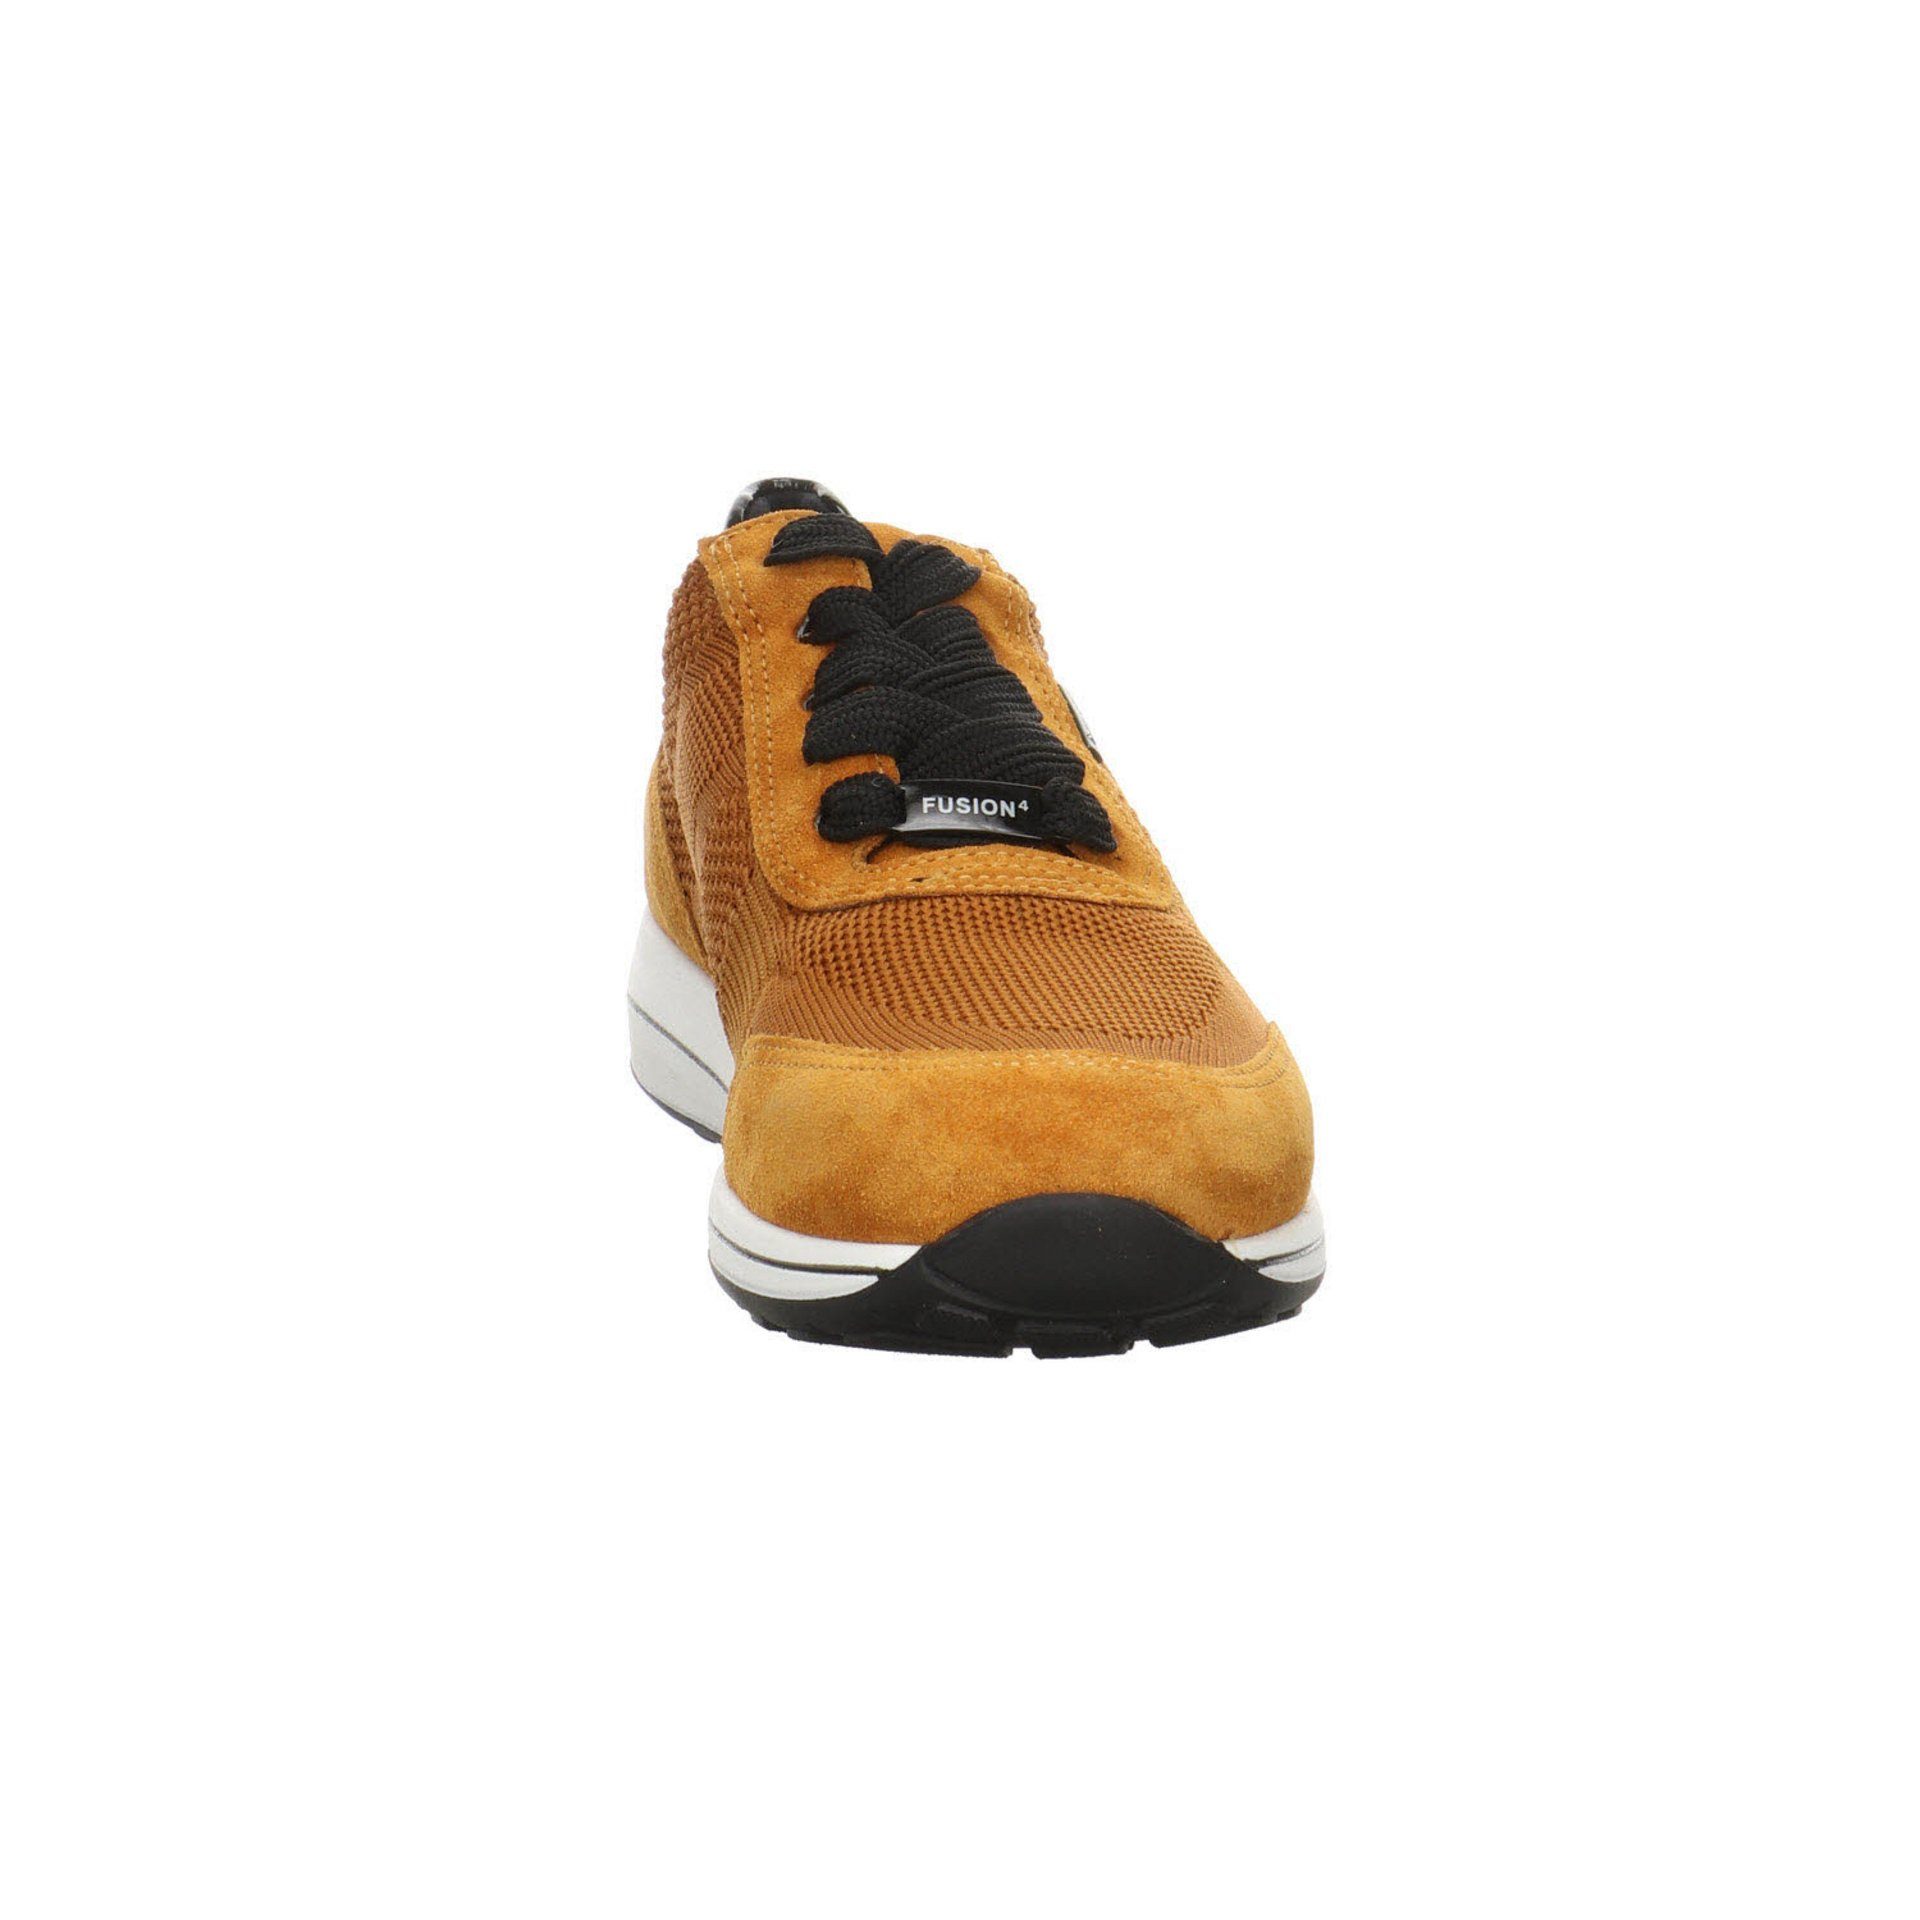 Schnürschuh Ara Leder-/Textilkombination kombiniert Schuhe Sneaker mit Damen gelb